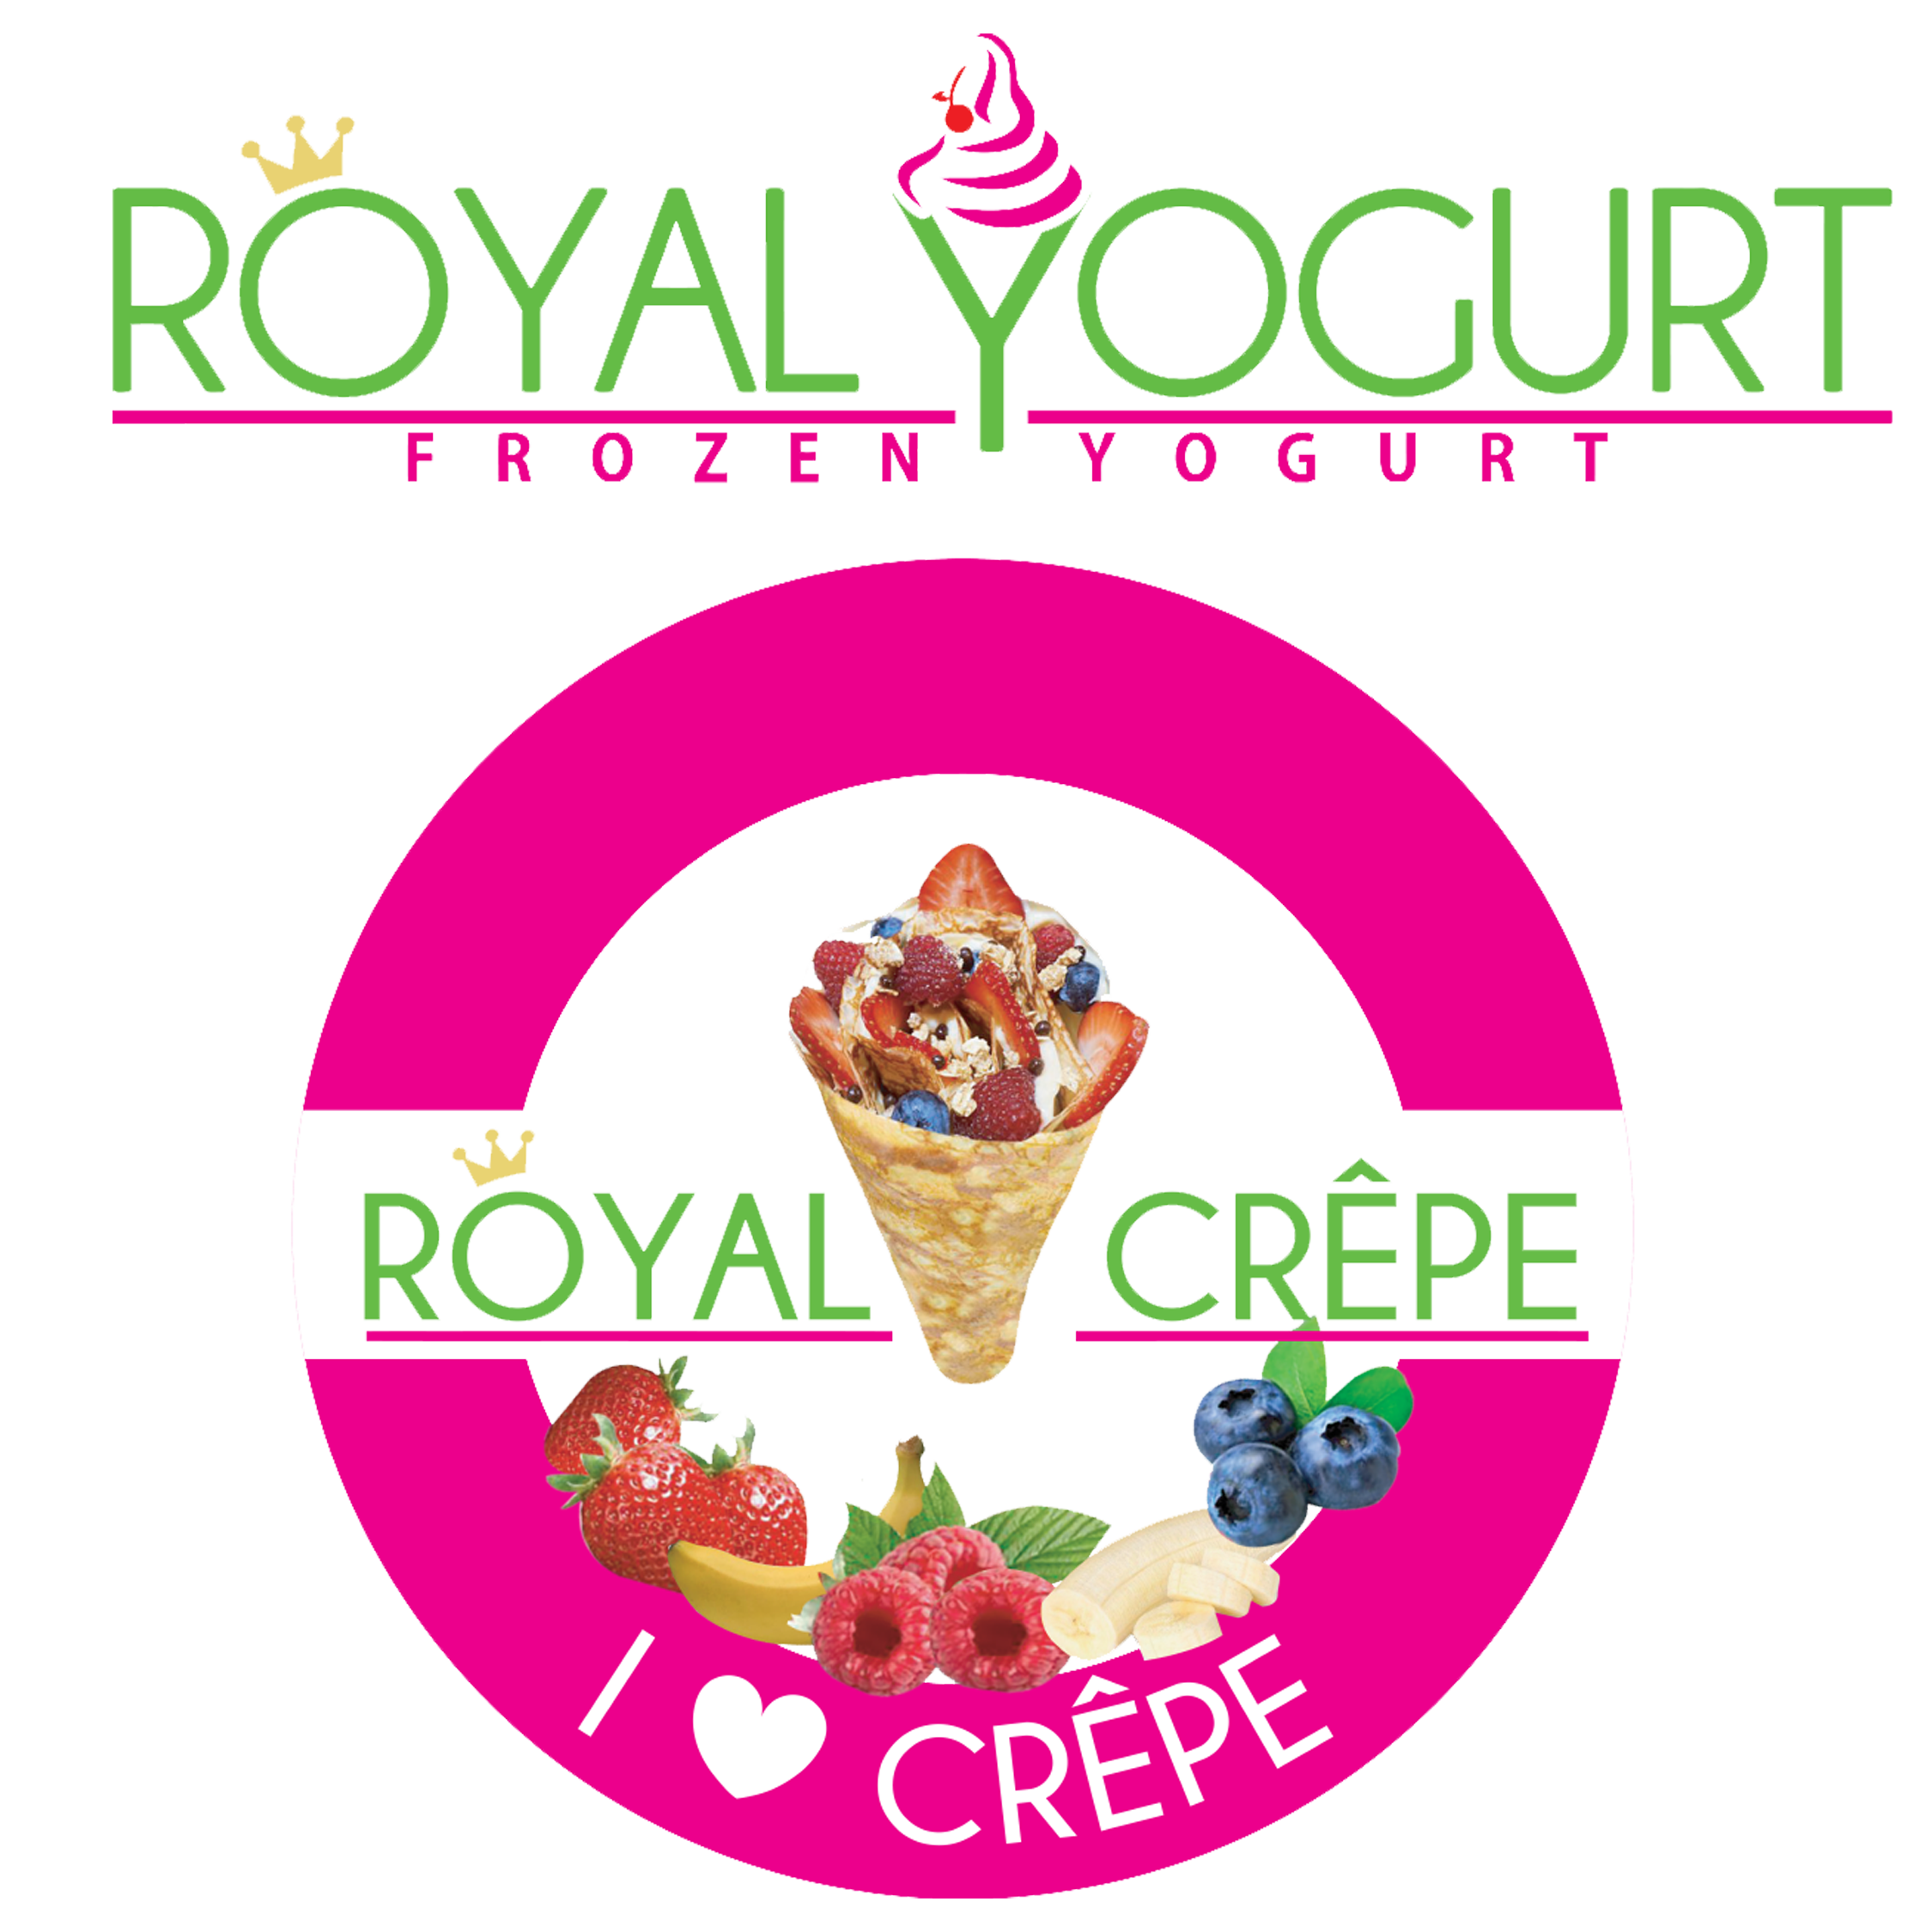 Royal Yogurt